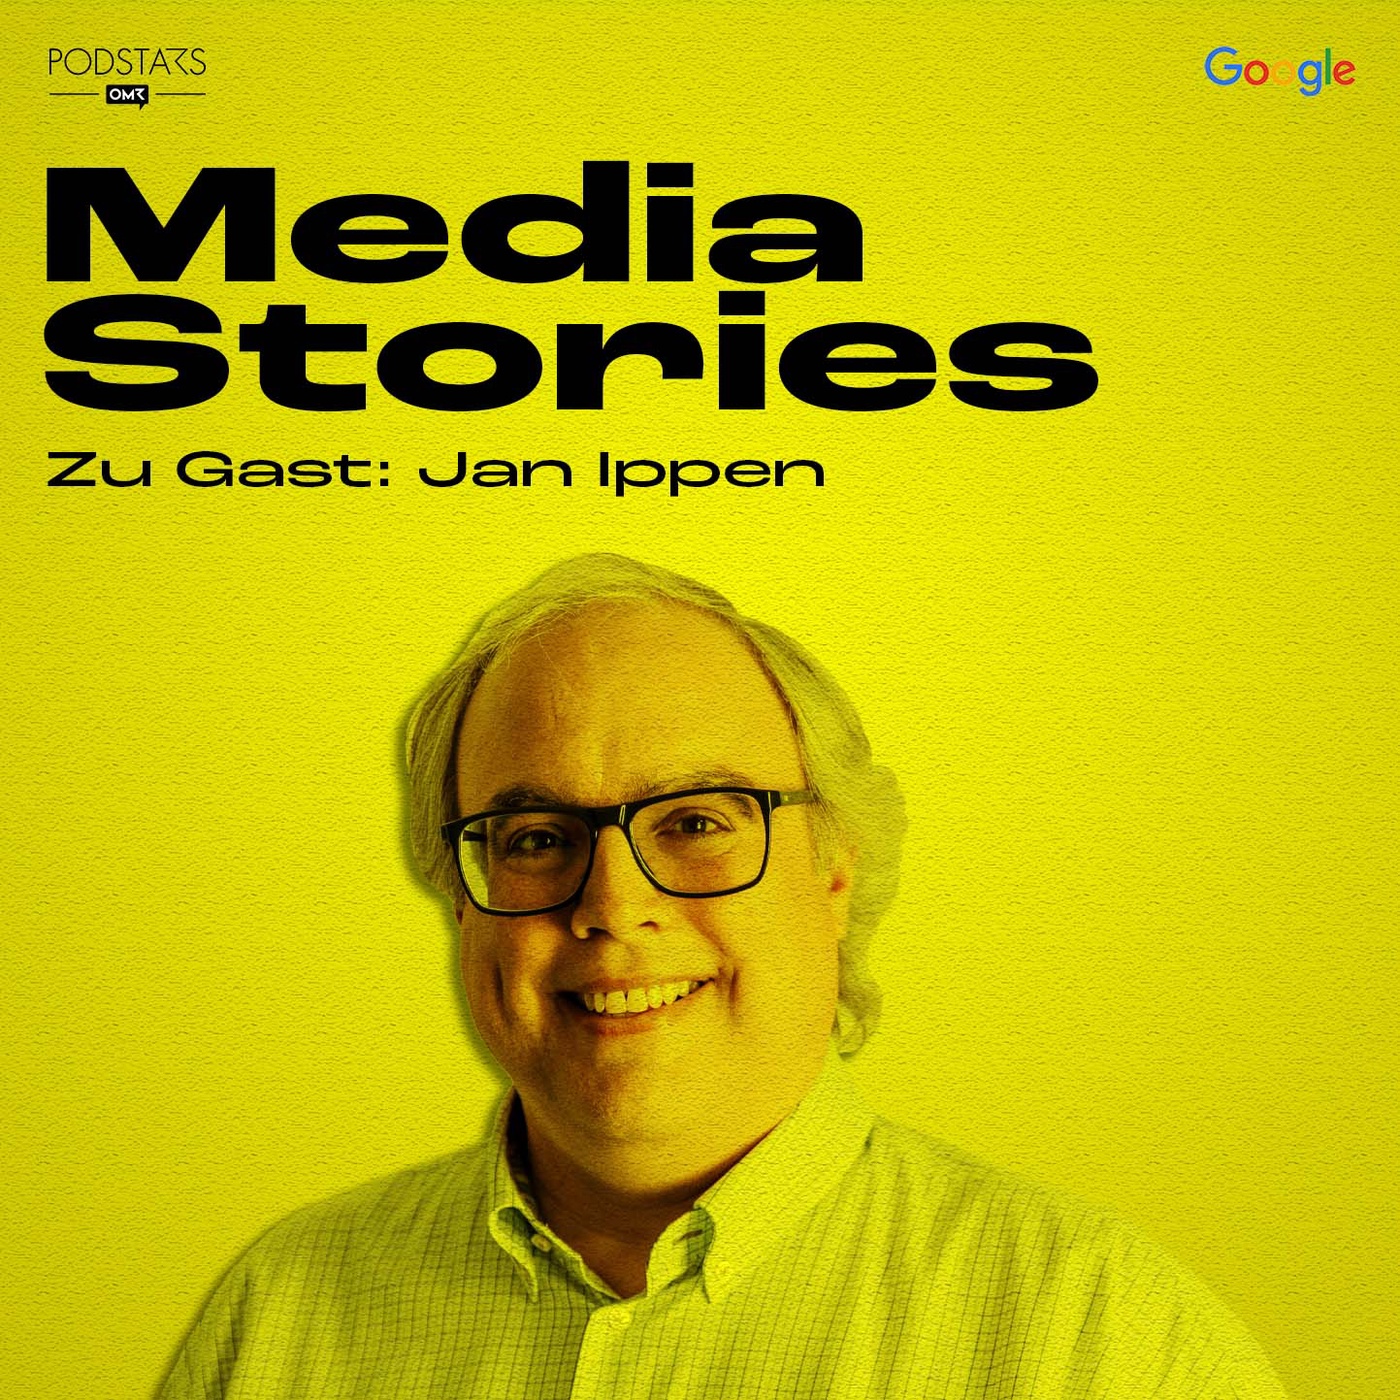 Technologie als Basis für guten Content - mit Jan Ippen von Ippen Digital Media